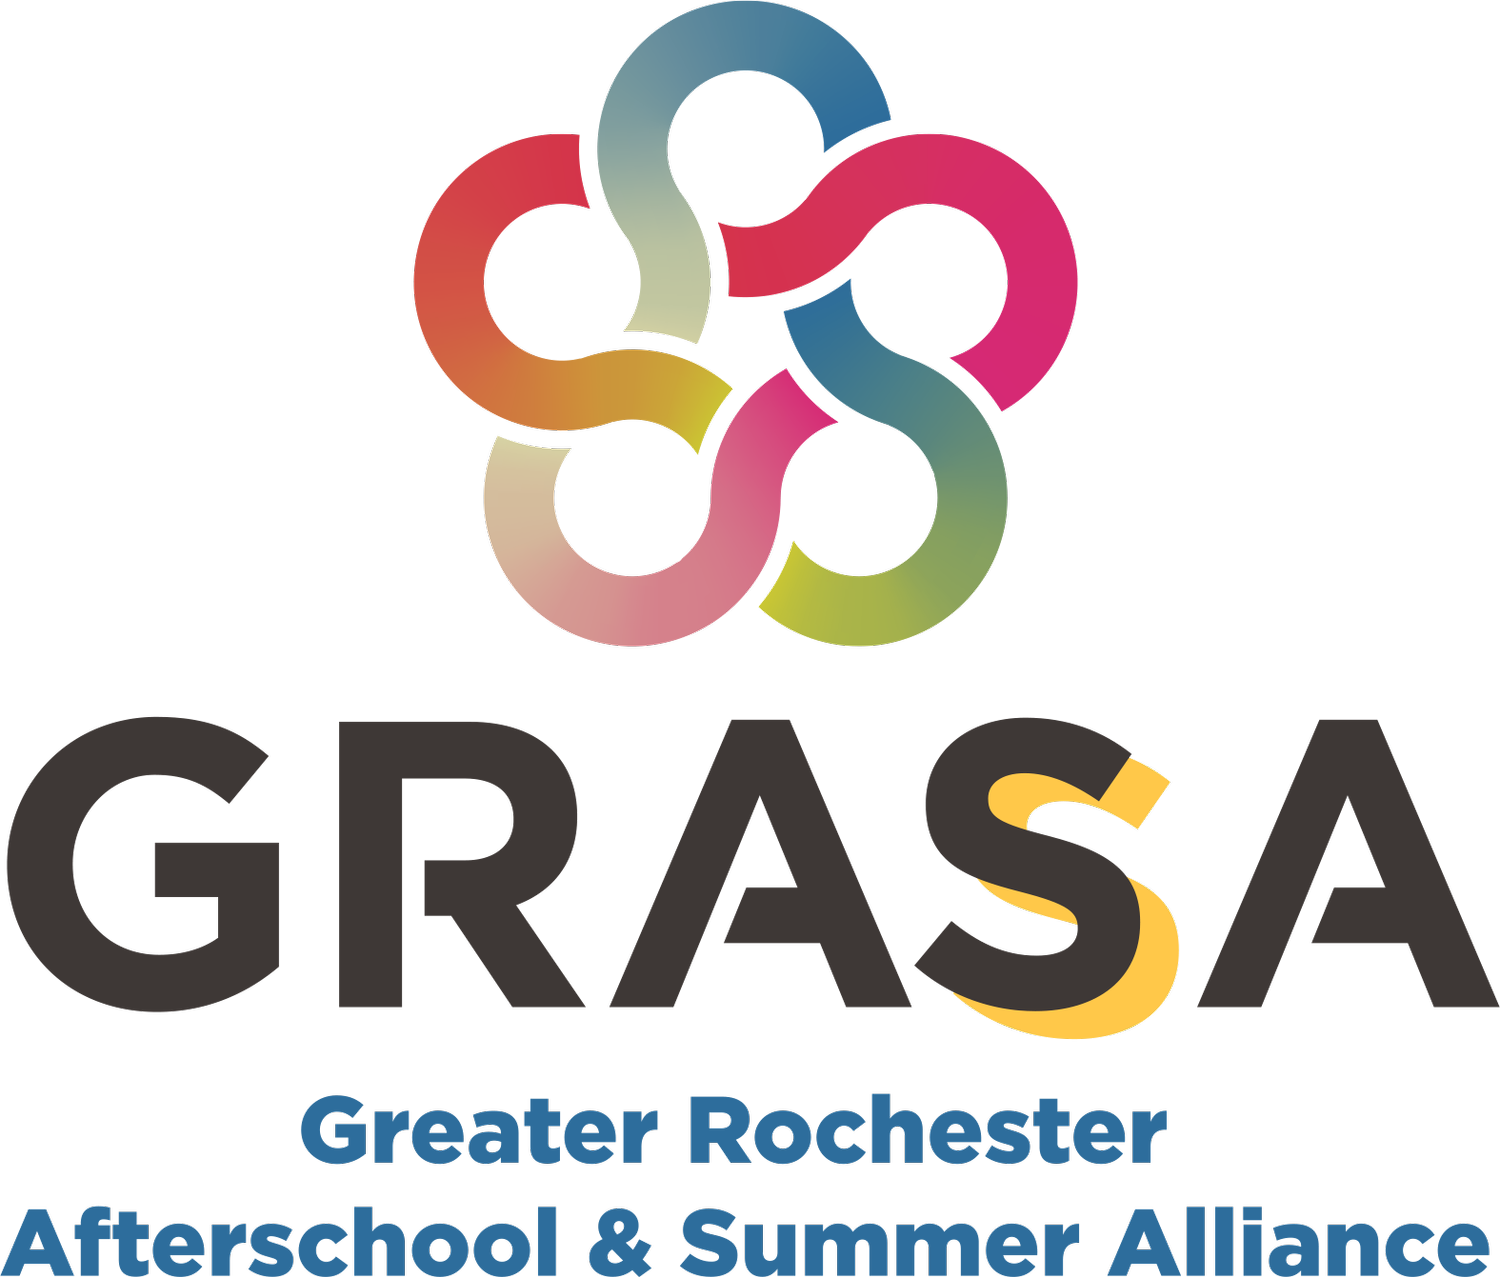 Greater Rochester Afterschool & Summer Alliance